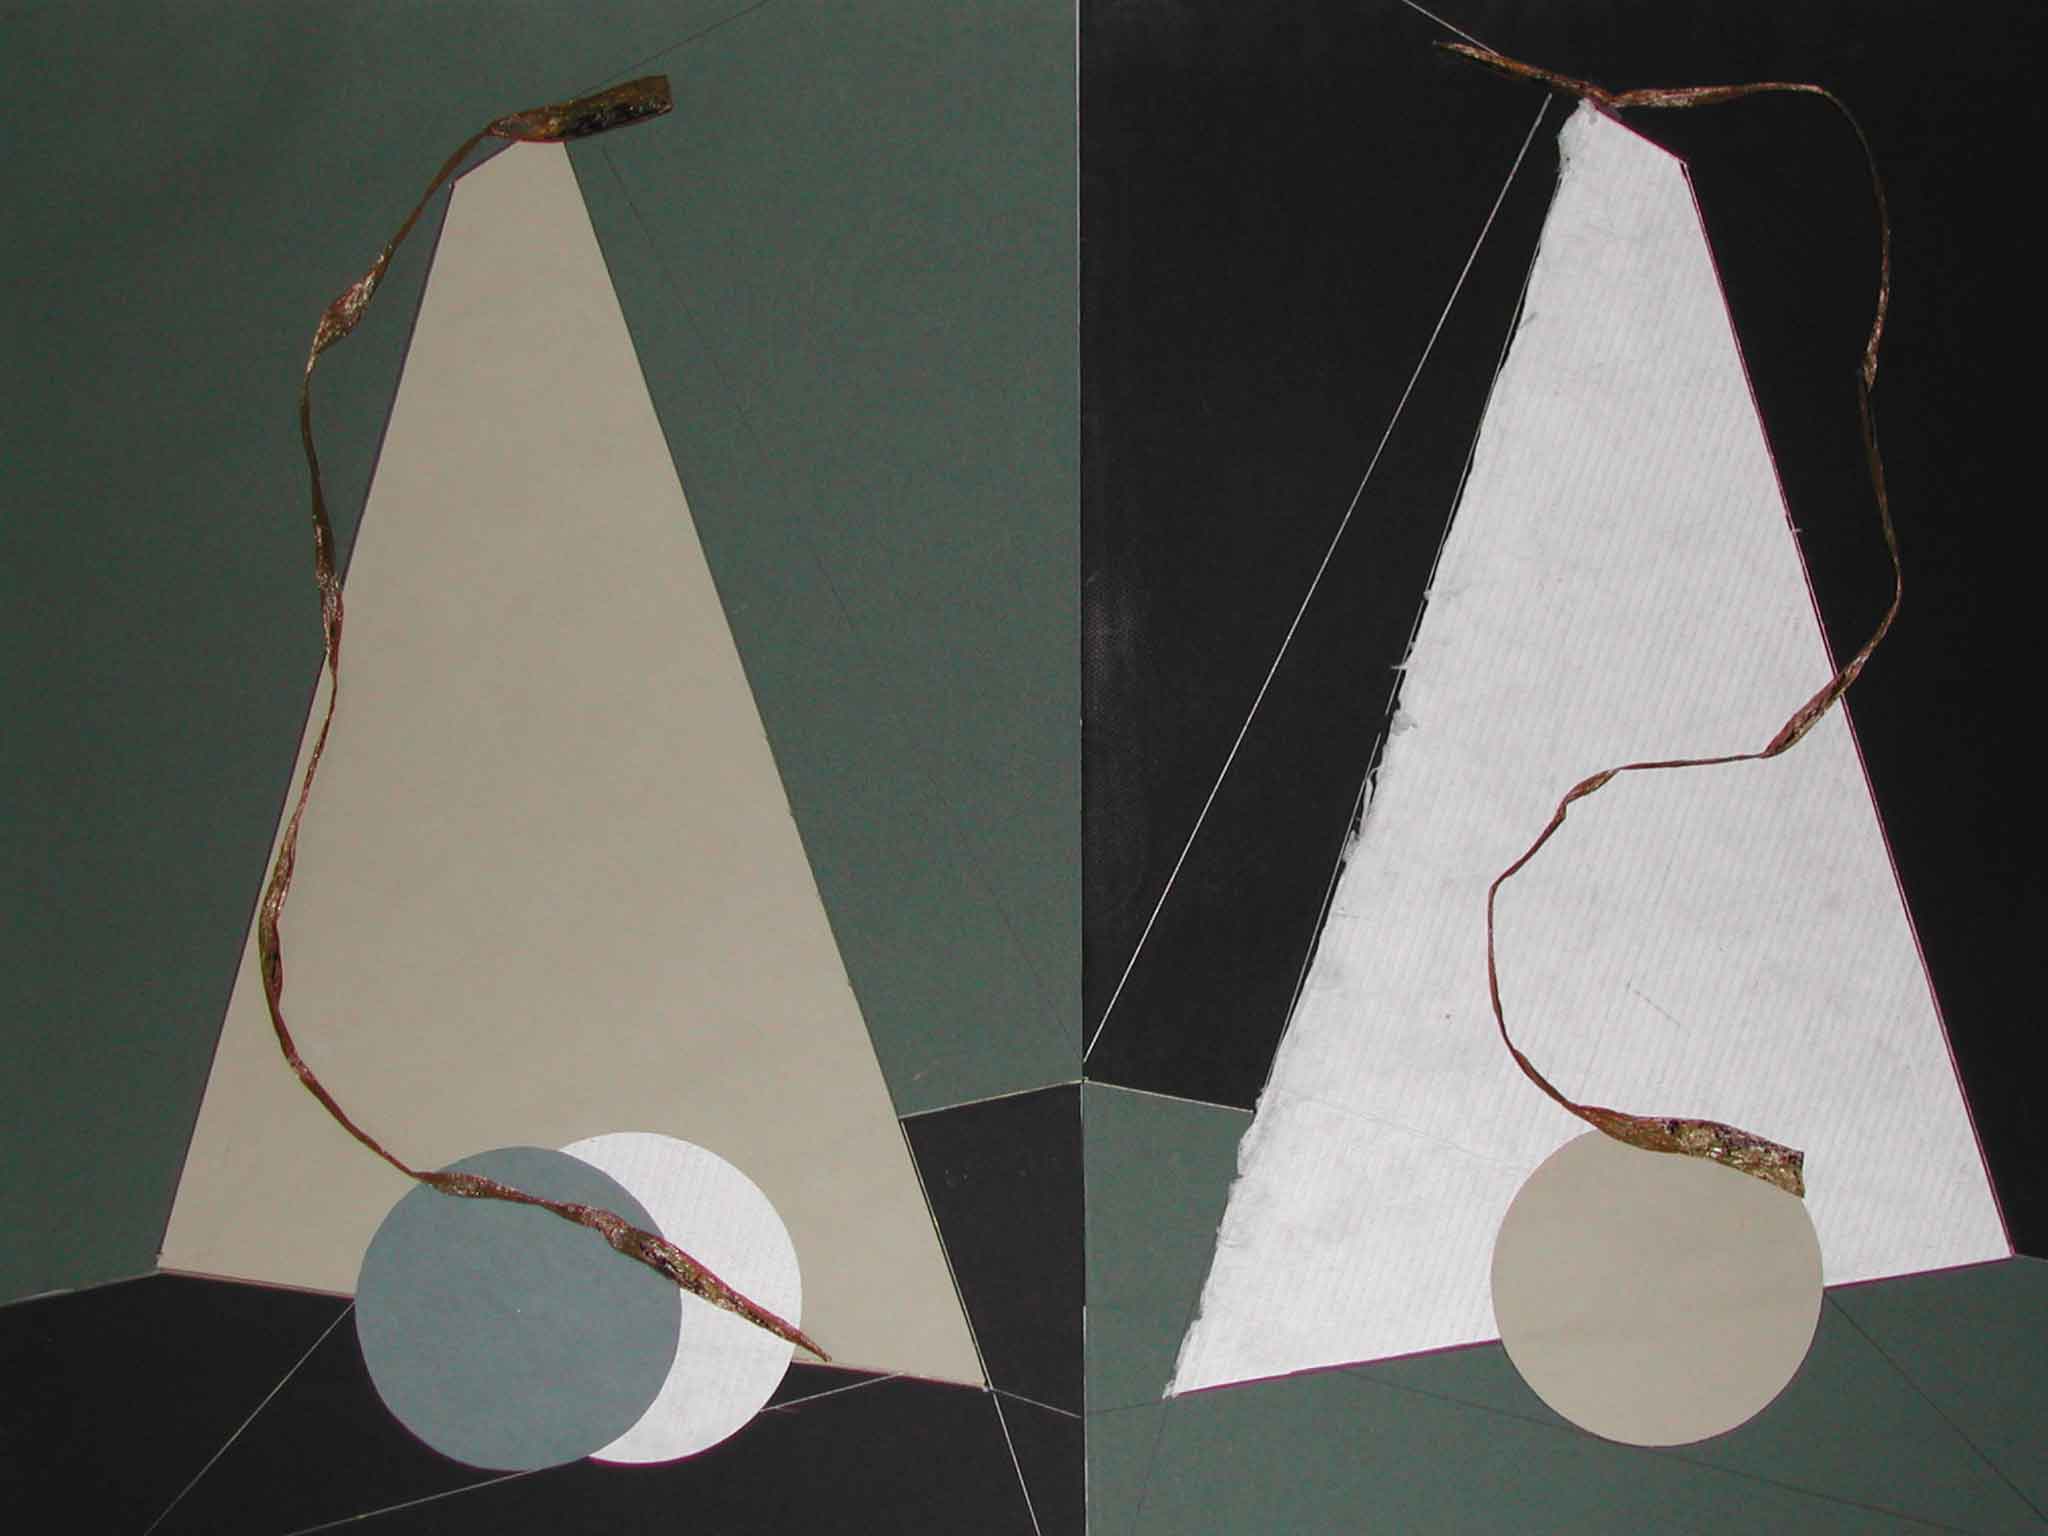  Abstracción geométrica, 2001 